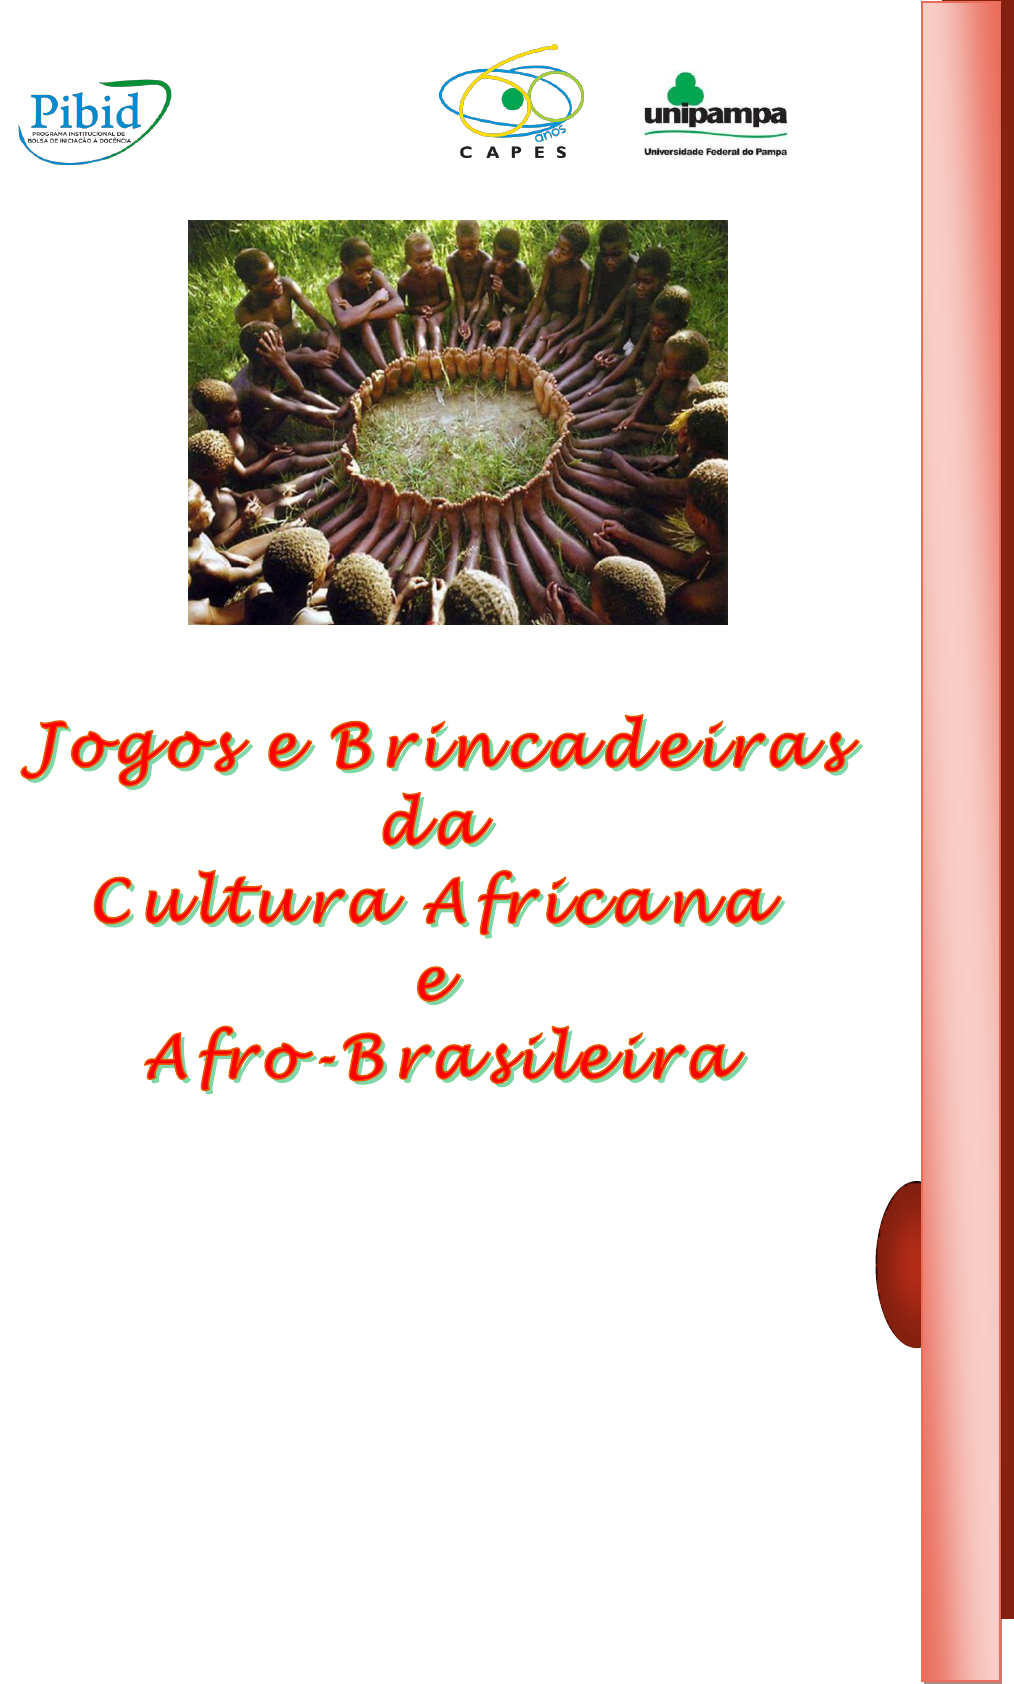 BRINCADEIRAS E JOGOS DE MATRIZ INDÍGENA E AFRICANA 07 07 2020